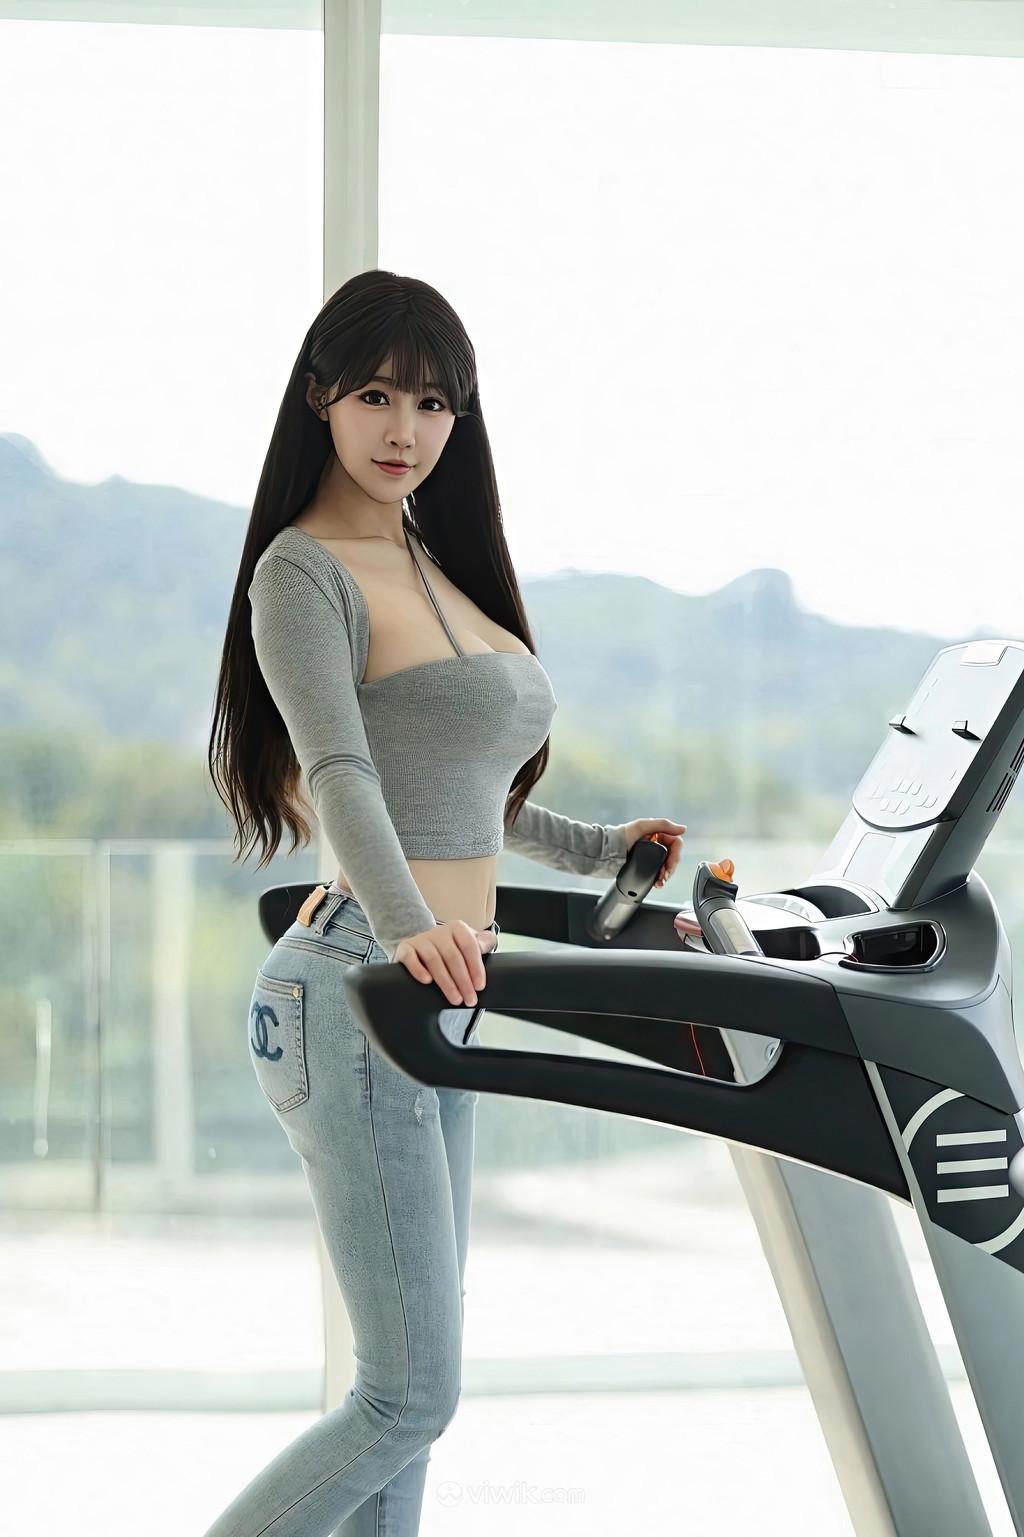 亚洲在线丰满辣妹健身大片性感美女图片